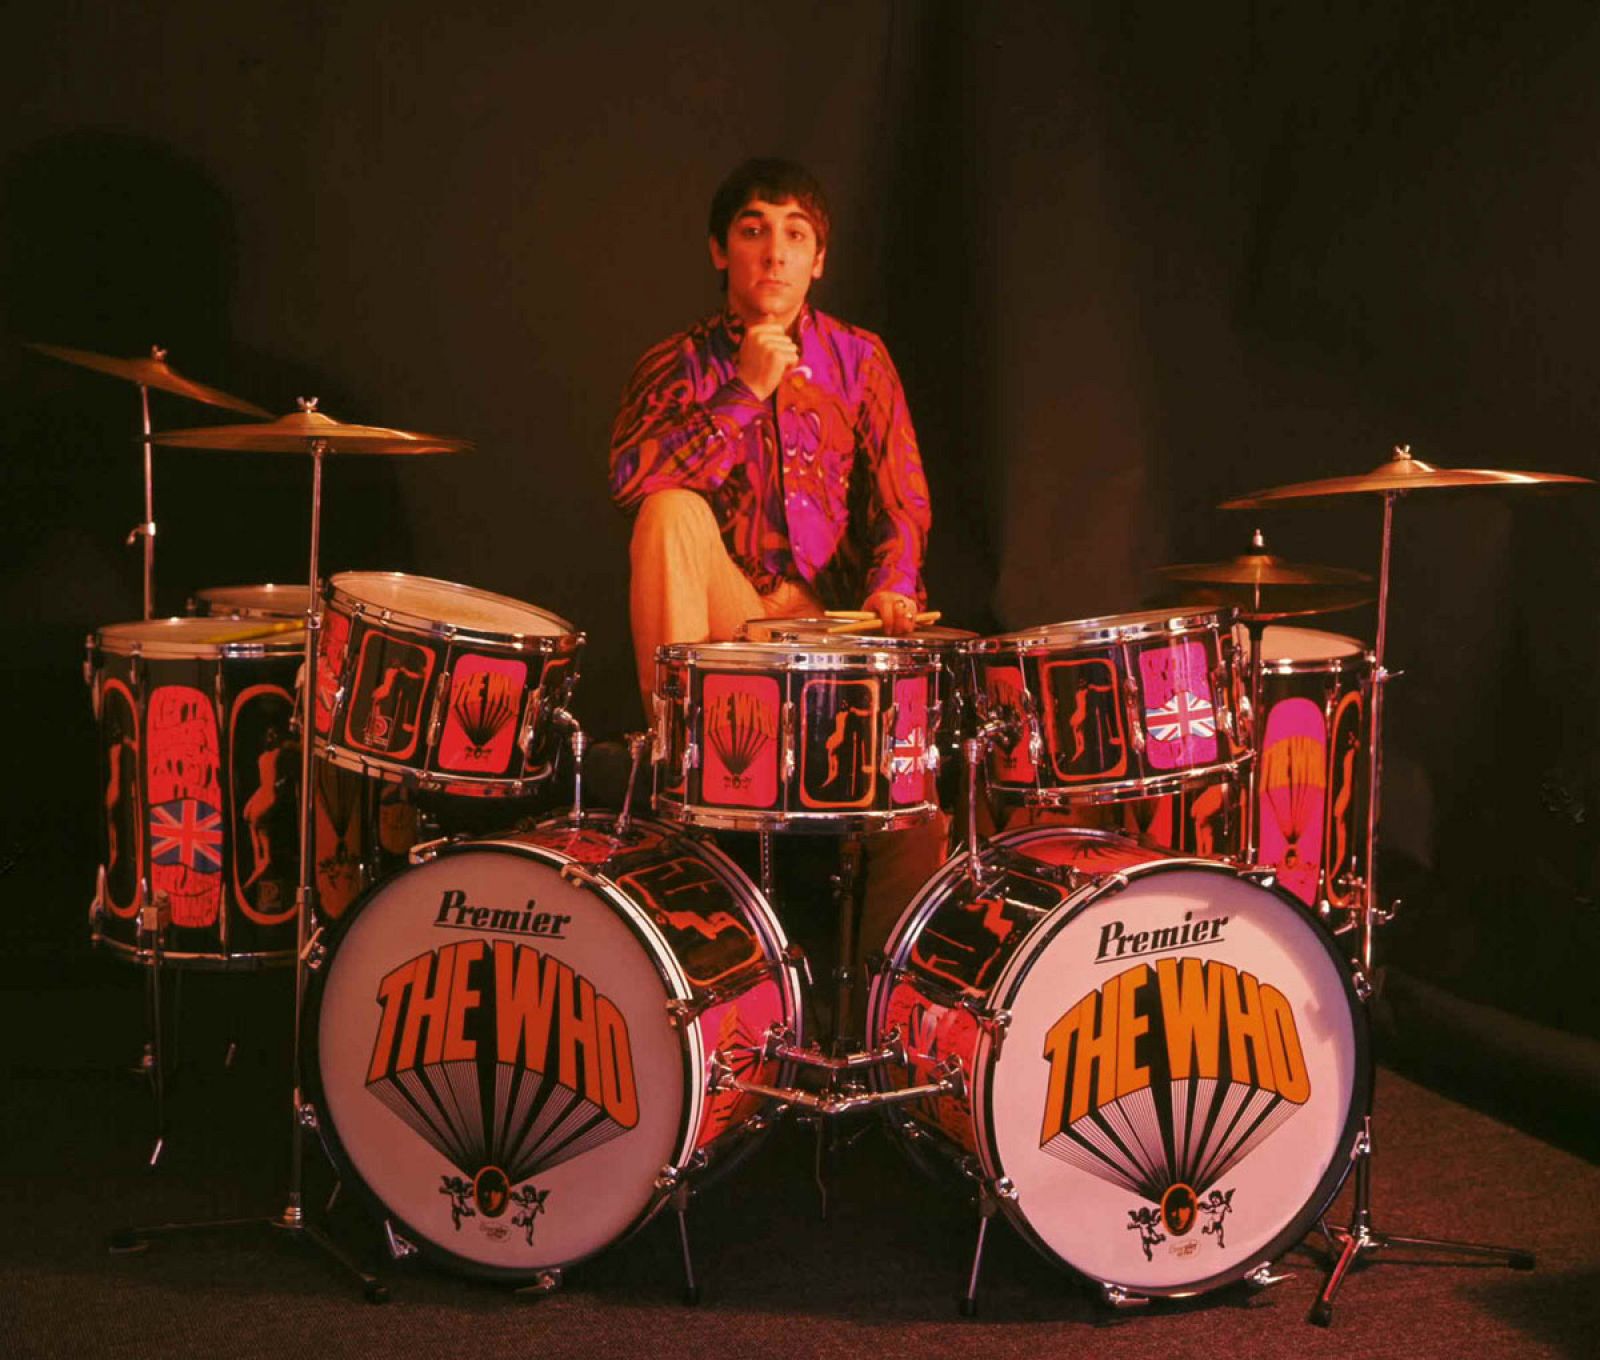 El batería de The Who, Keith Moon, fallecido en 1978.